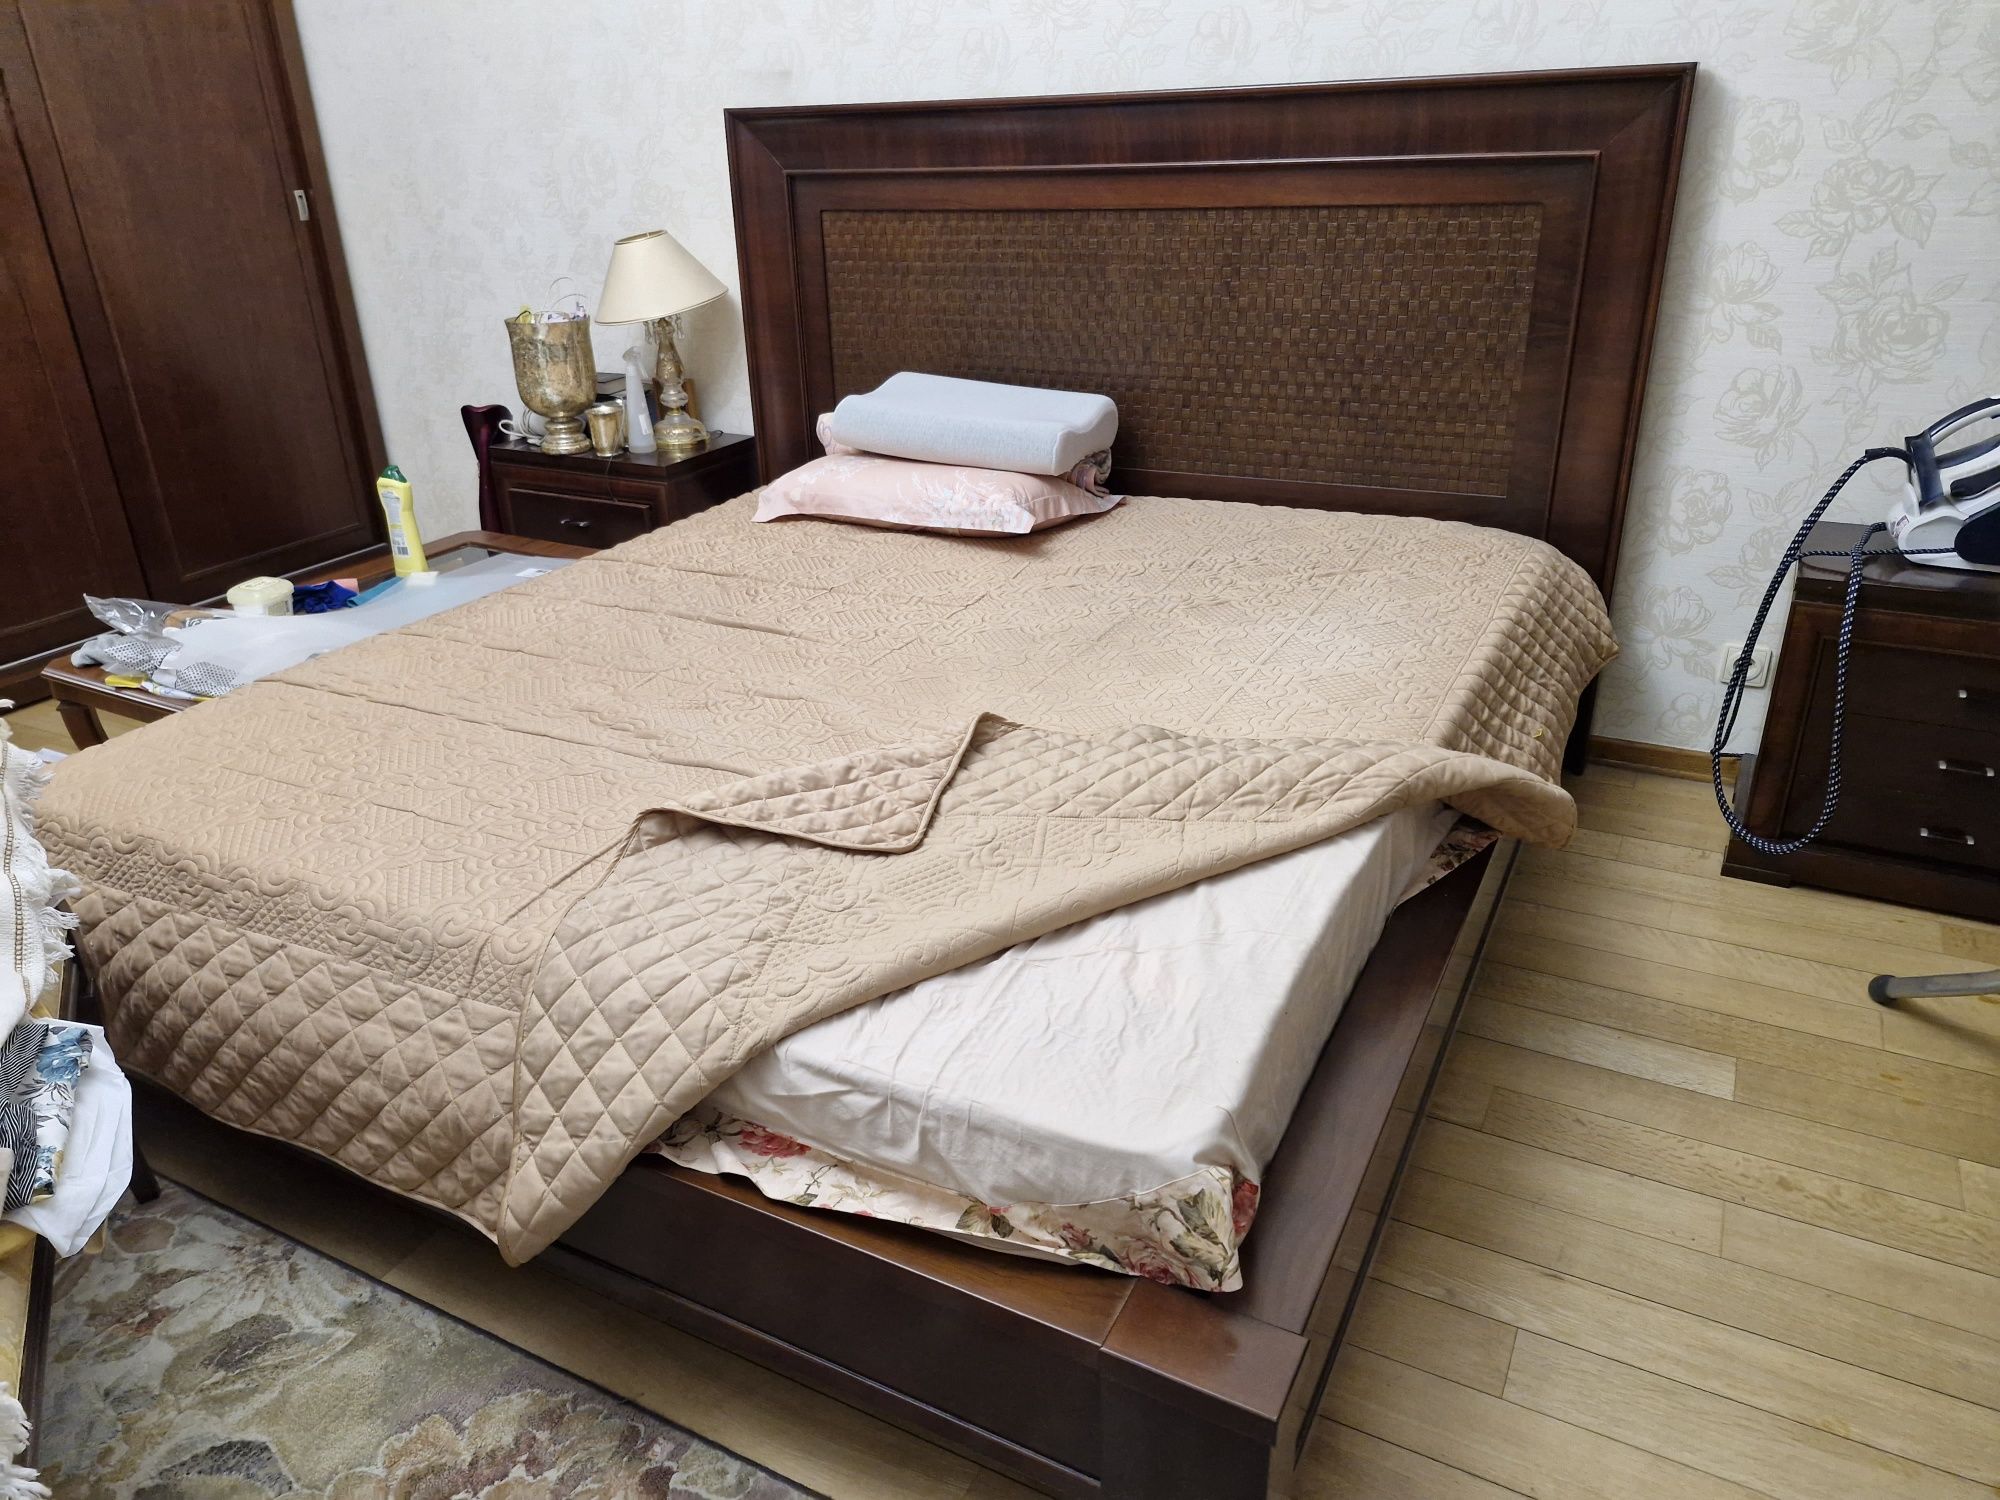 Кровать 2.0×2.2м.с матрасом из натурального дерева.